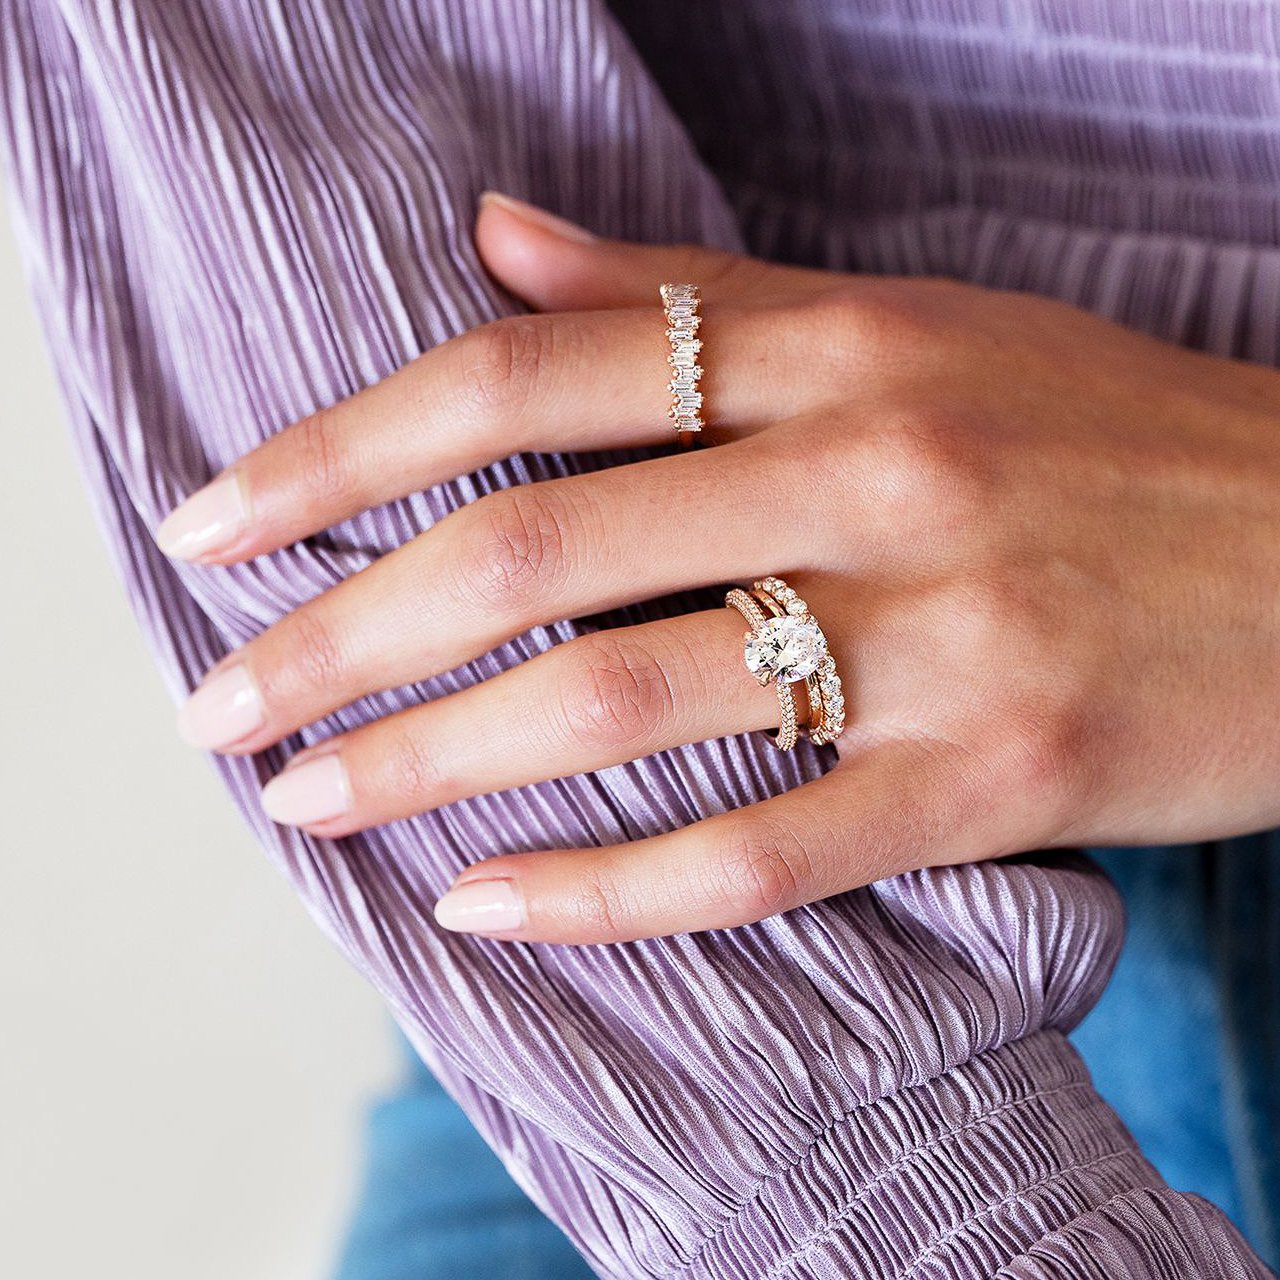 Garnet Baguette Eternity Ring January Birthstone Ring Gemstone Ring Mothers day gift Birthday Gift Garnet Engagement Ring Promise Ring